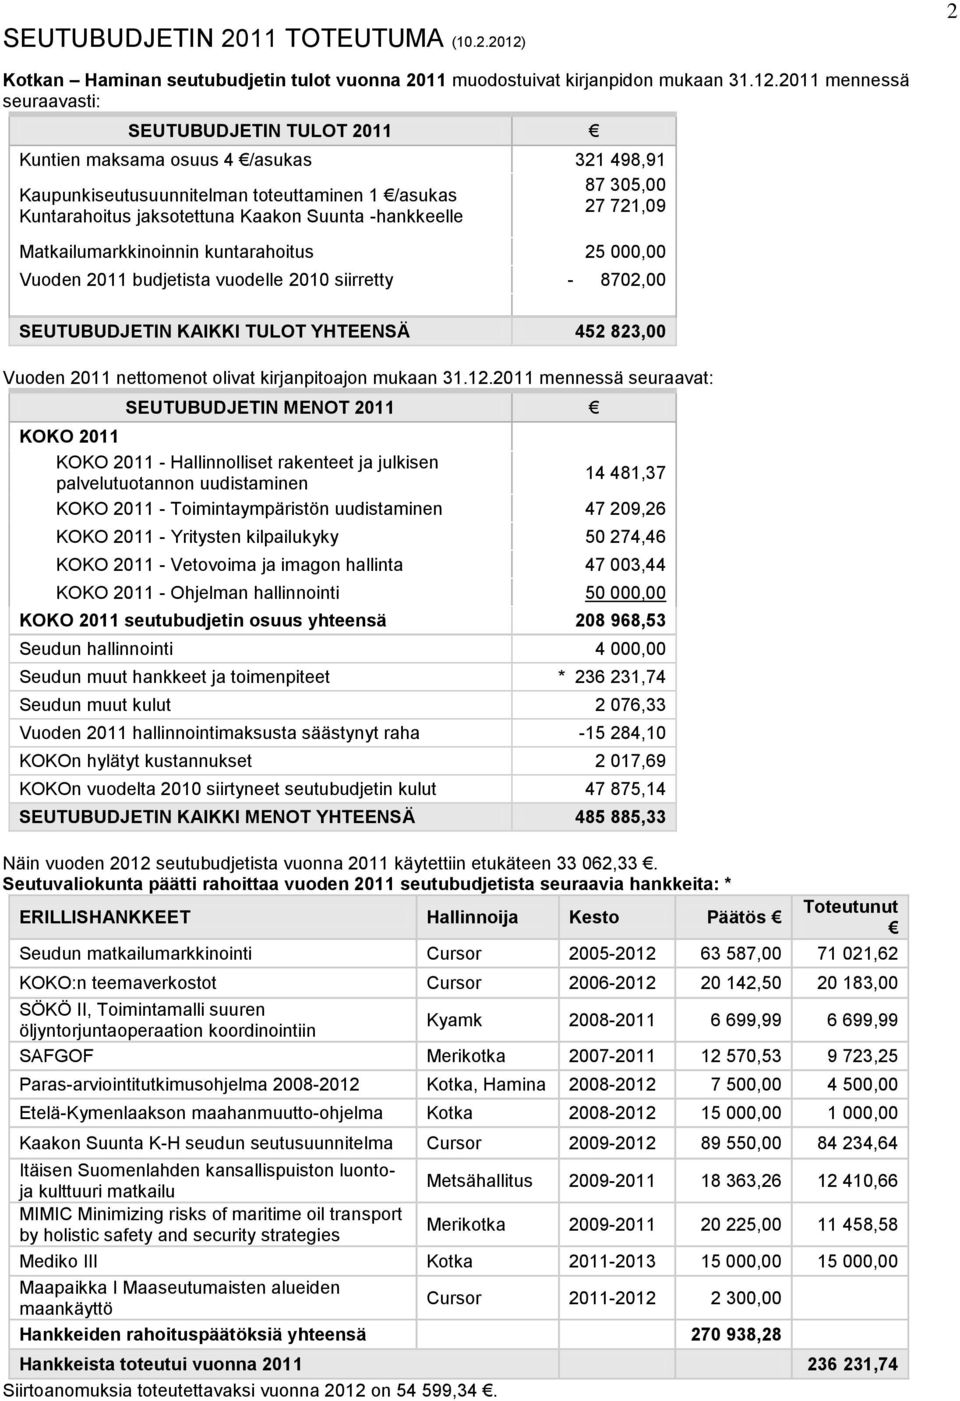 2011 mennessä seuraavasti: SEUTUBUDJETIN TULOT 2011 Kuntien maksama osuus 4 /asukas 321 498,91 87 305,00 Kaupunkiseutusuunnitelman toteuttaminen 1 /asukas 27 721,09 Kuntarahoitus jaksotettuna Kaakon